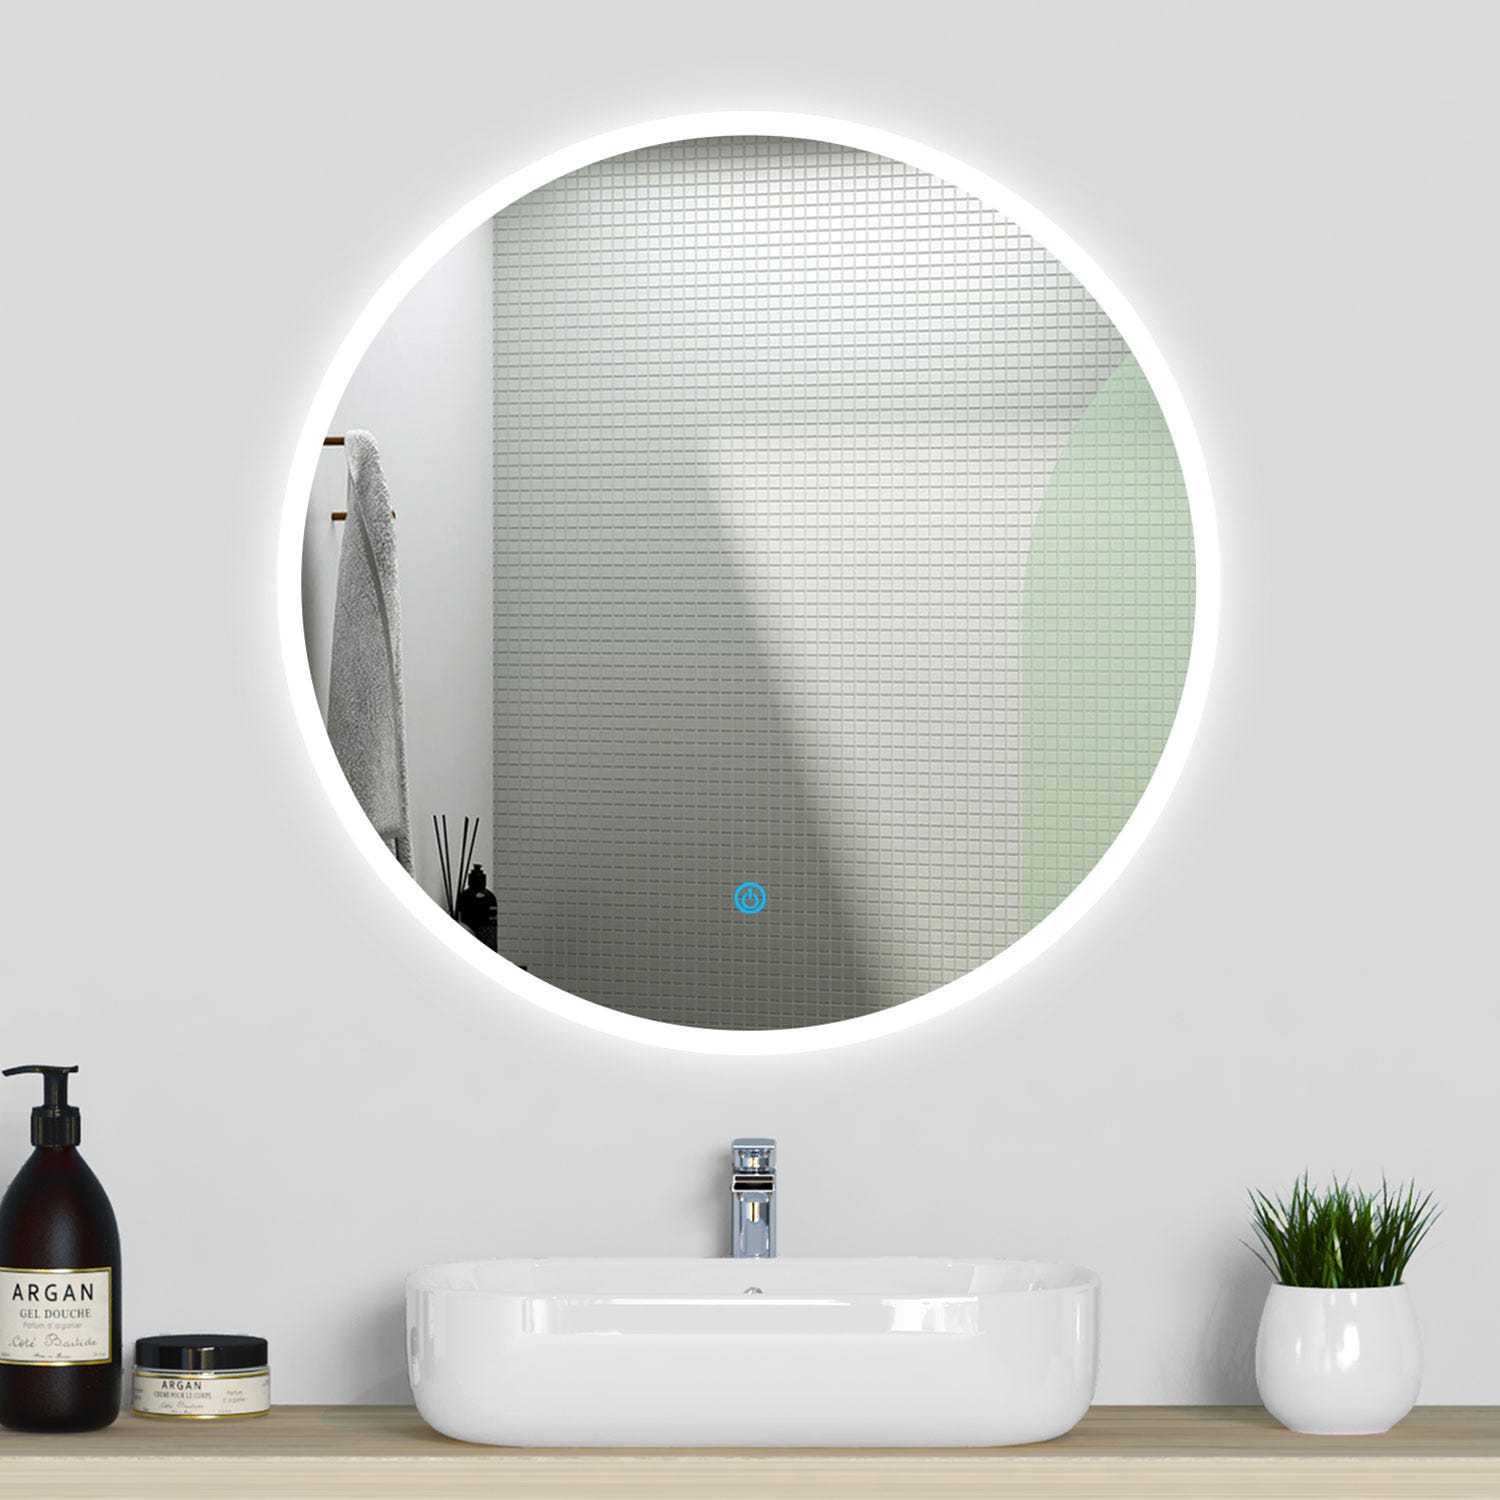 Espejo de baño de 120 cm, espejo redondo antiniebla con iluminación LED  blanca fría 6000k, espejo de pared ip44 & impermeable (apertura fina)